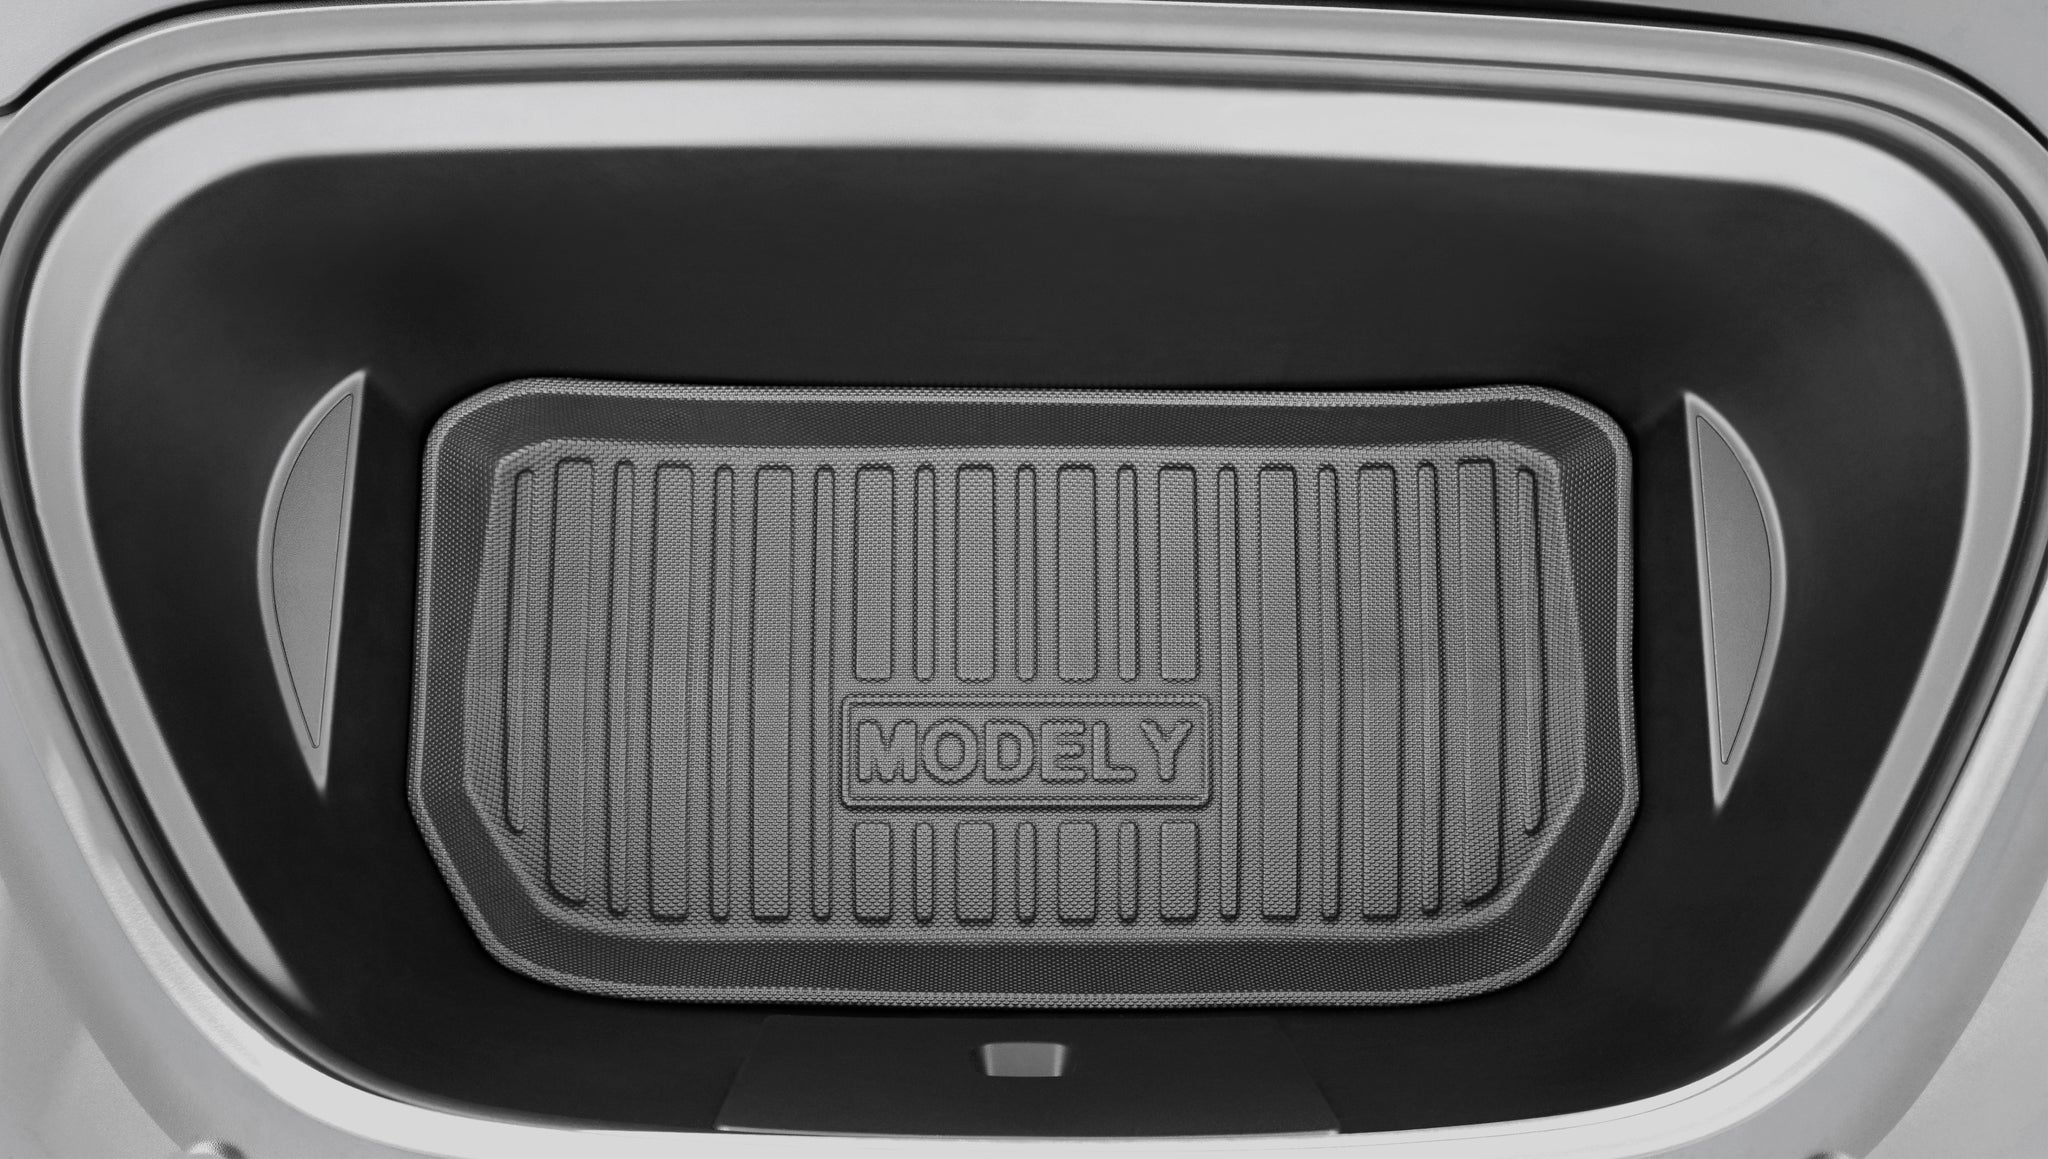 Hebebühnen-Aufnahme (4 Stück) für Tesla Model 3 / Y – TLECTRIC